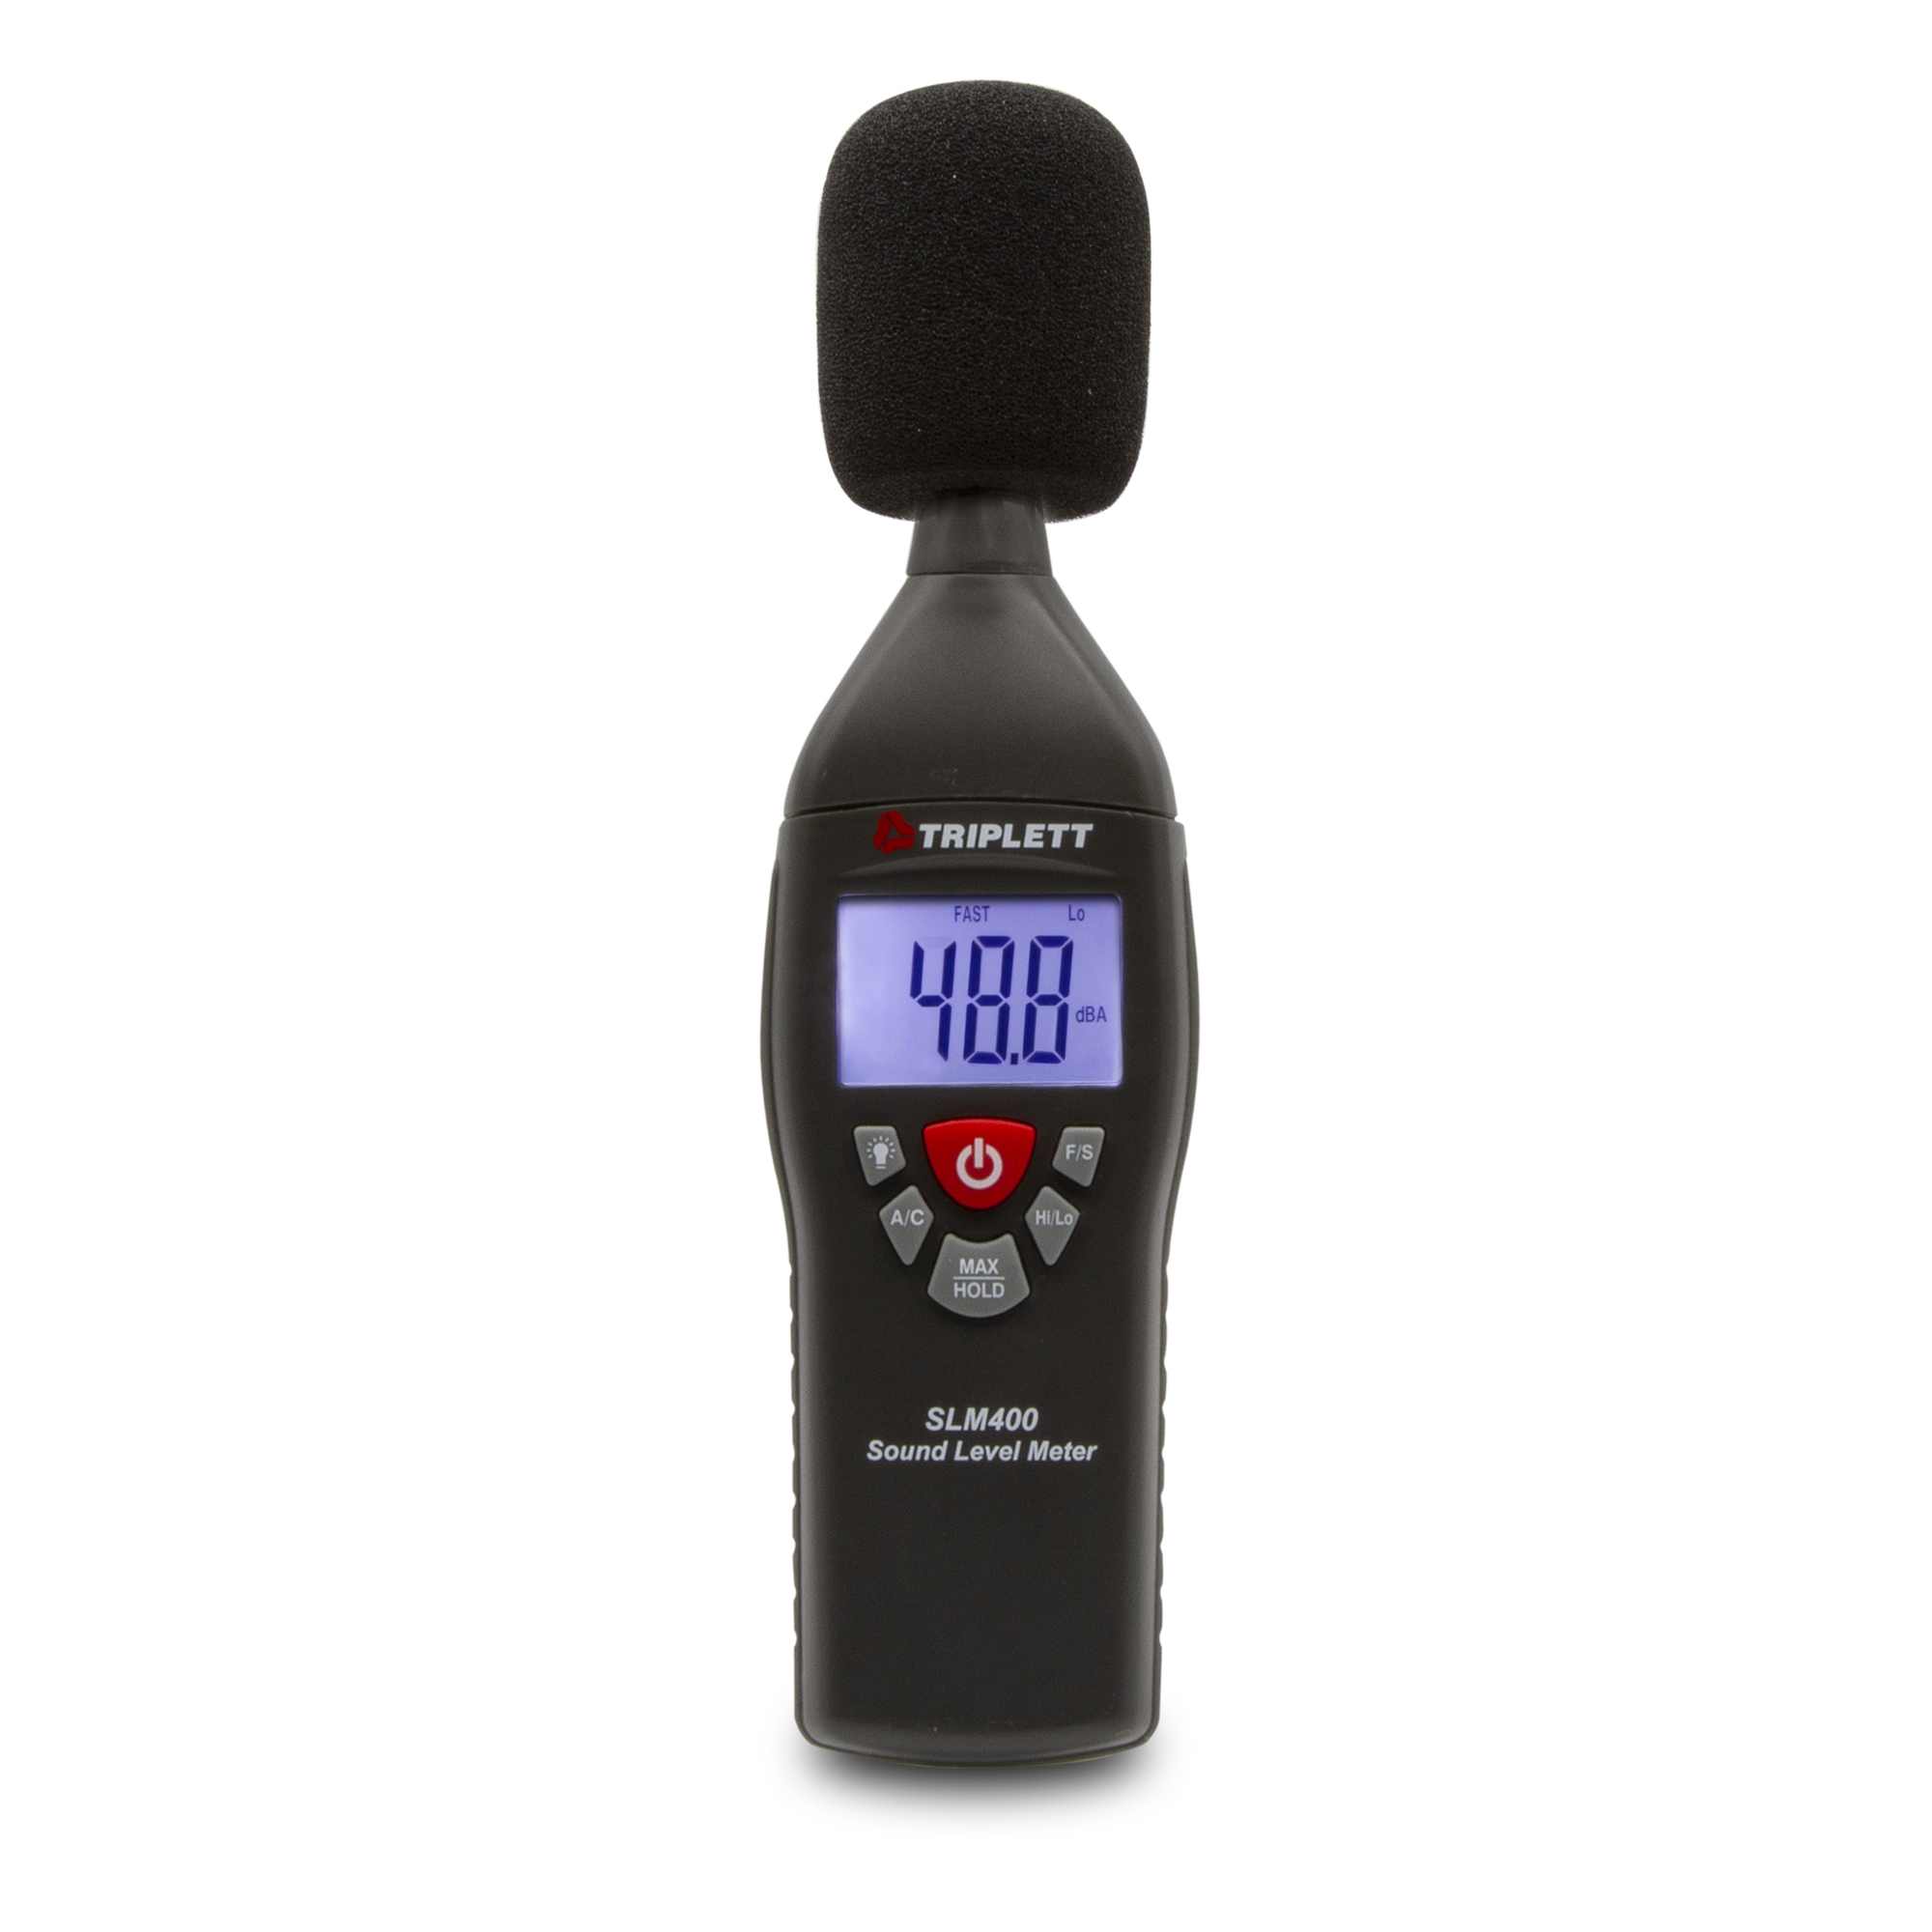 Triplett, Professional Type 2 Sound Level Meter, Model SLM400